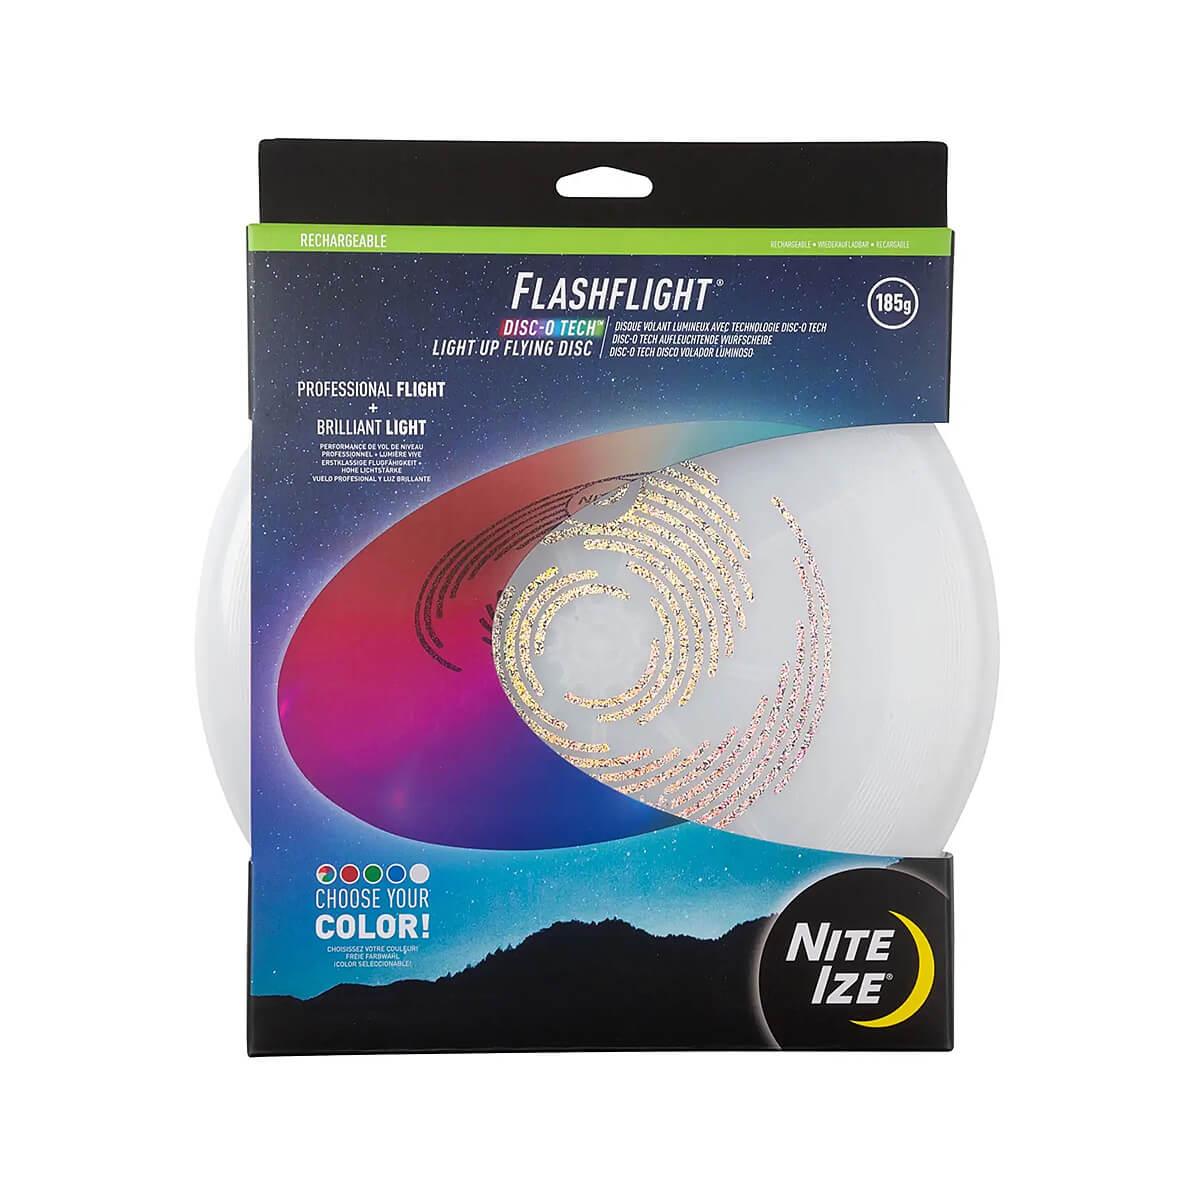  Flashflight Rechargeable Light Up Disc